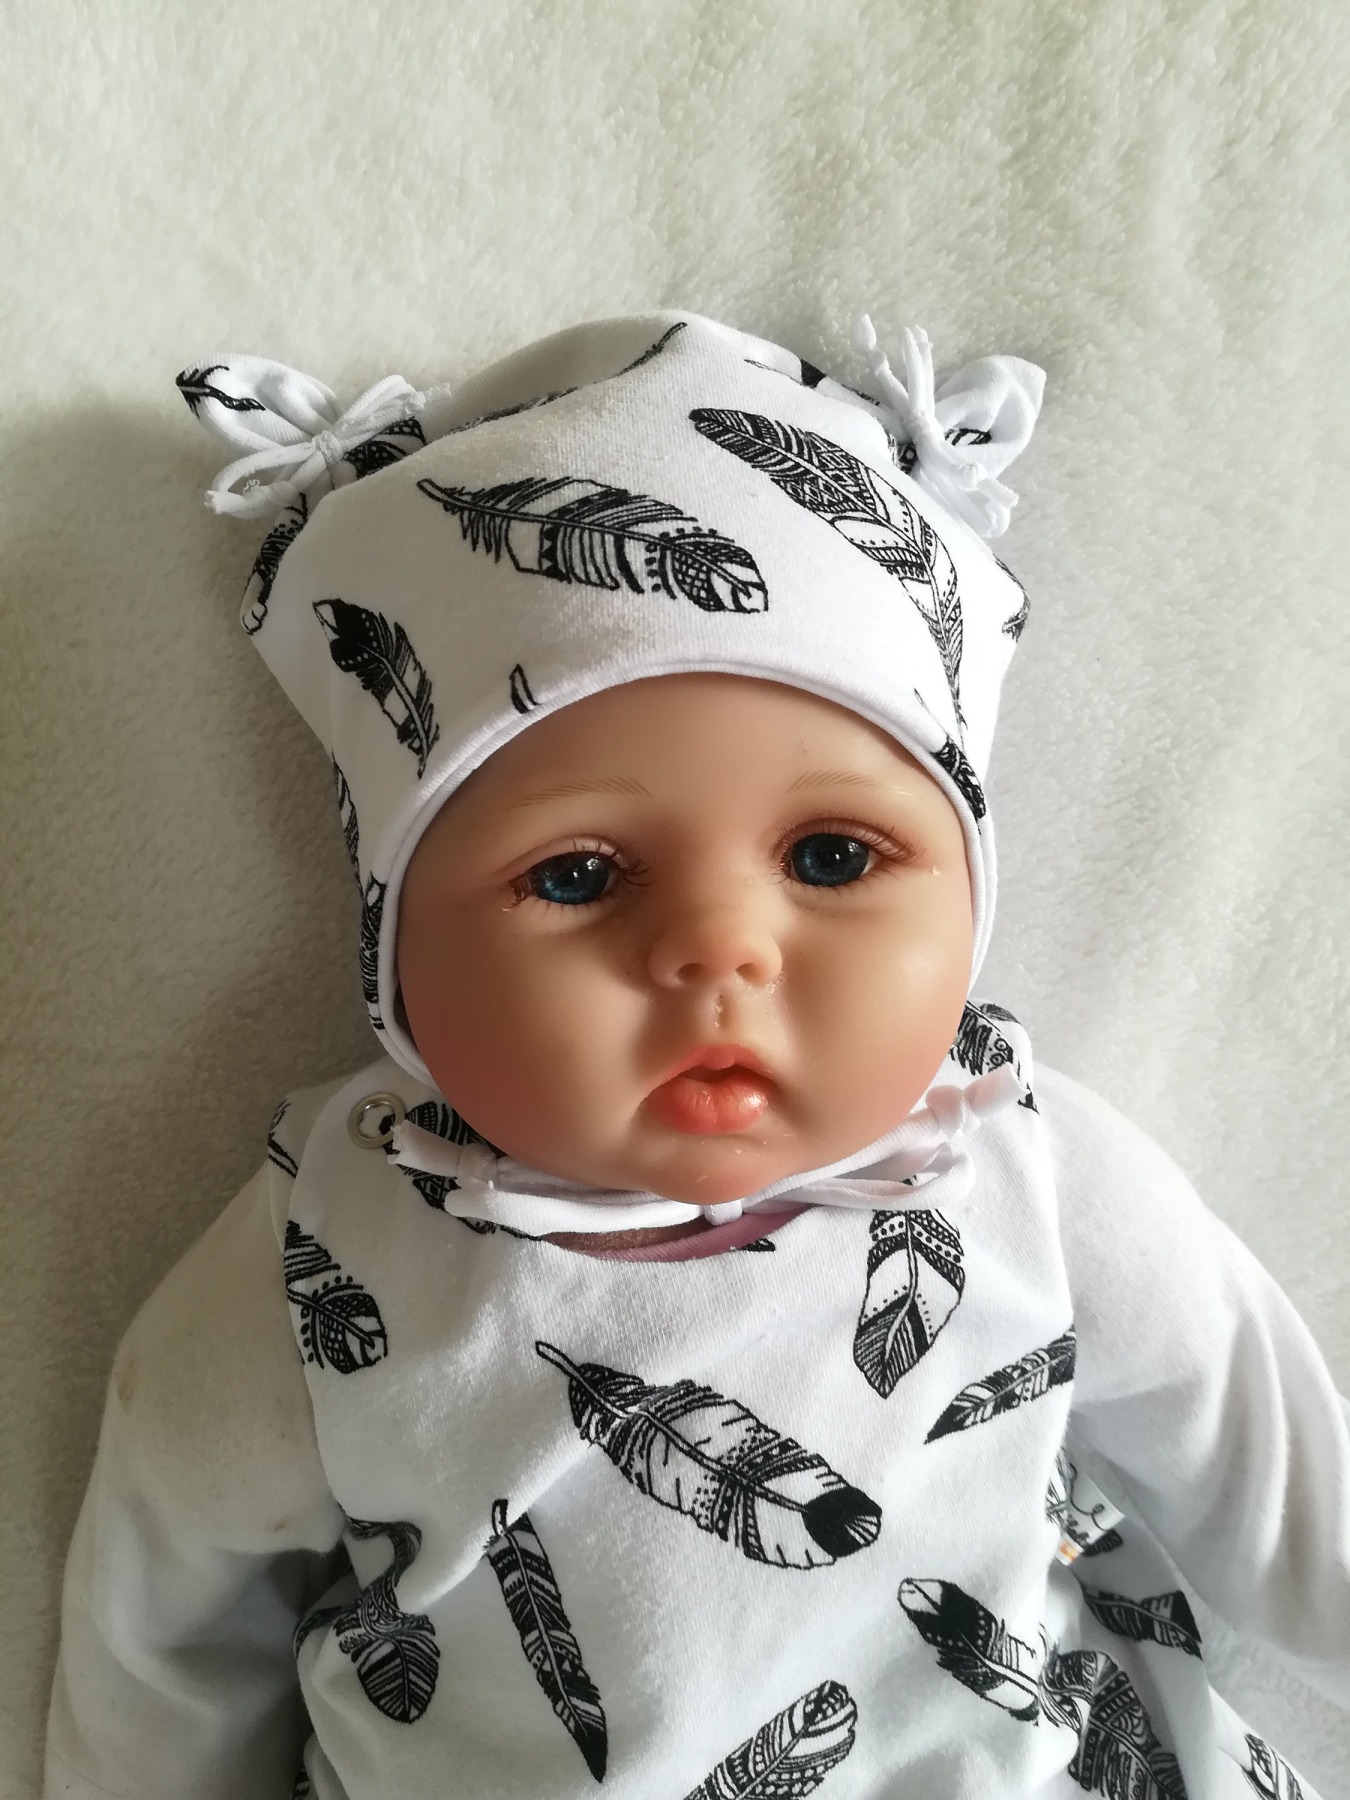 Ohrenmütze Baby Kind mit und ohne Bindebänder Mütze mit Ohren Federn schwarz weiß Kopfumfang 35 - 52cm Babymütze Bindemütze 4